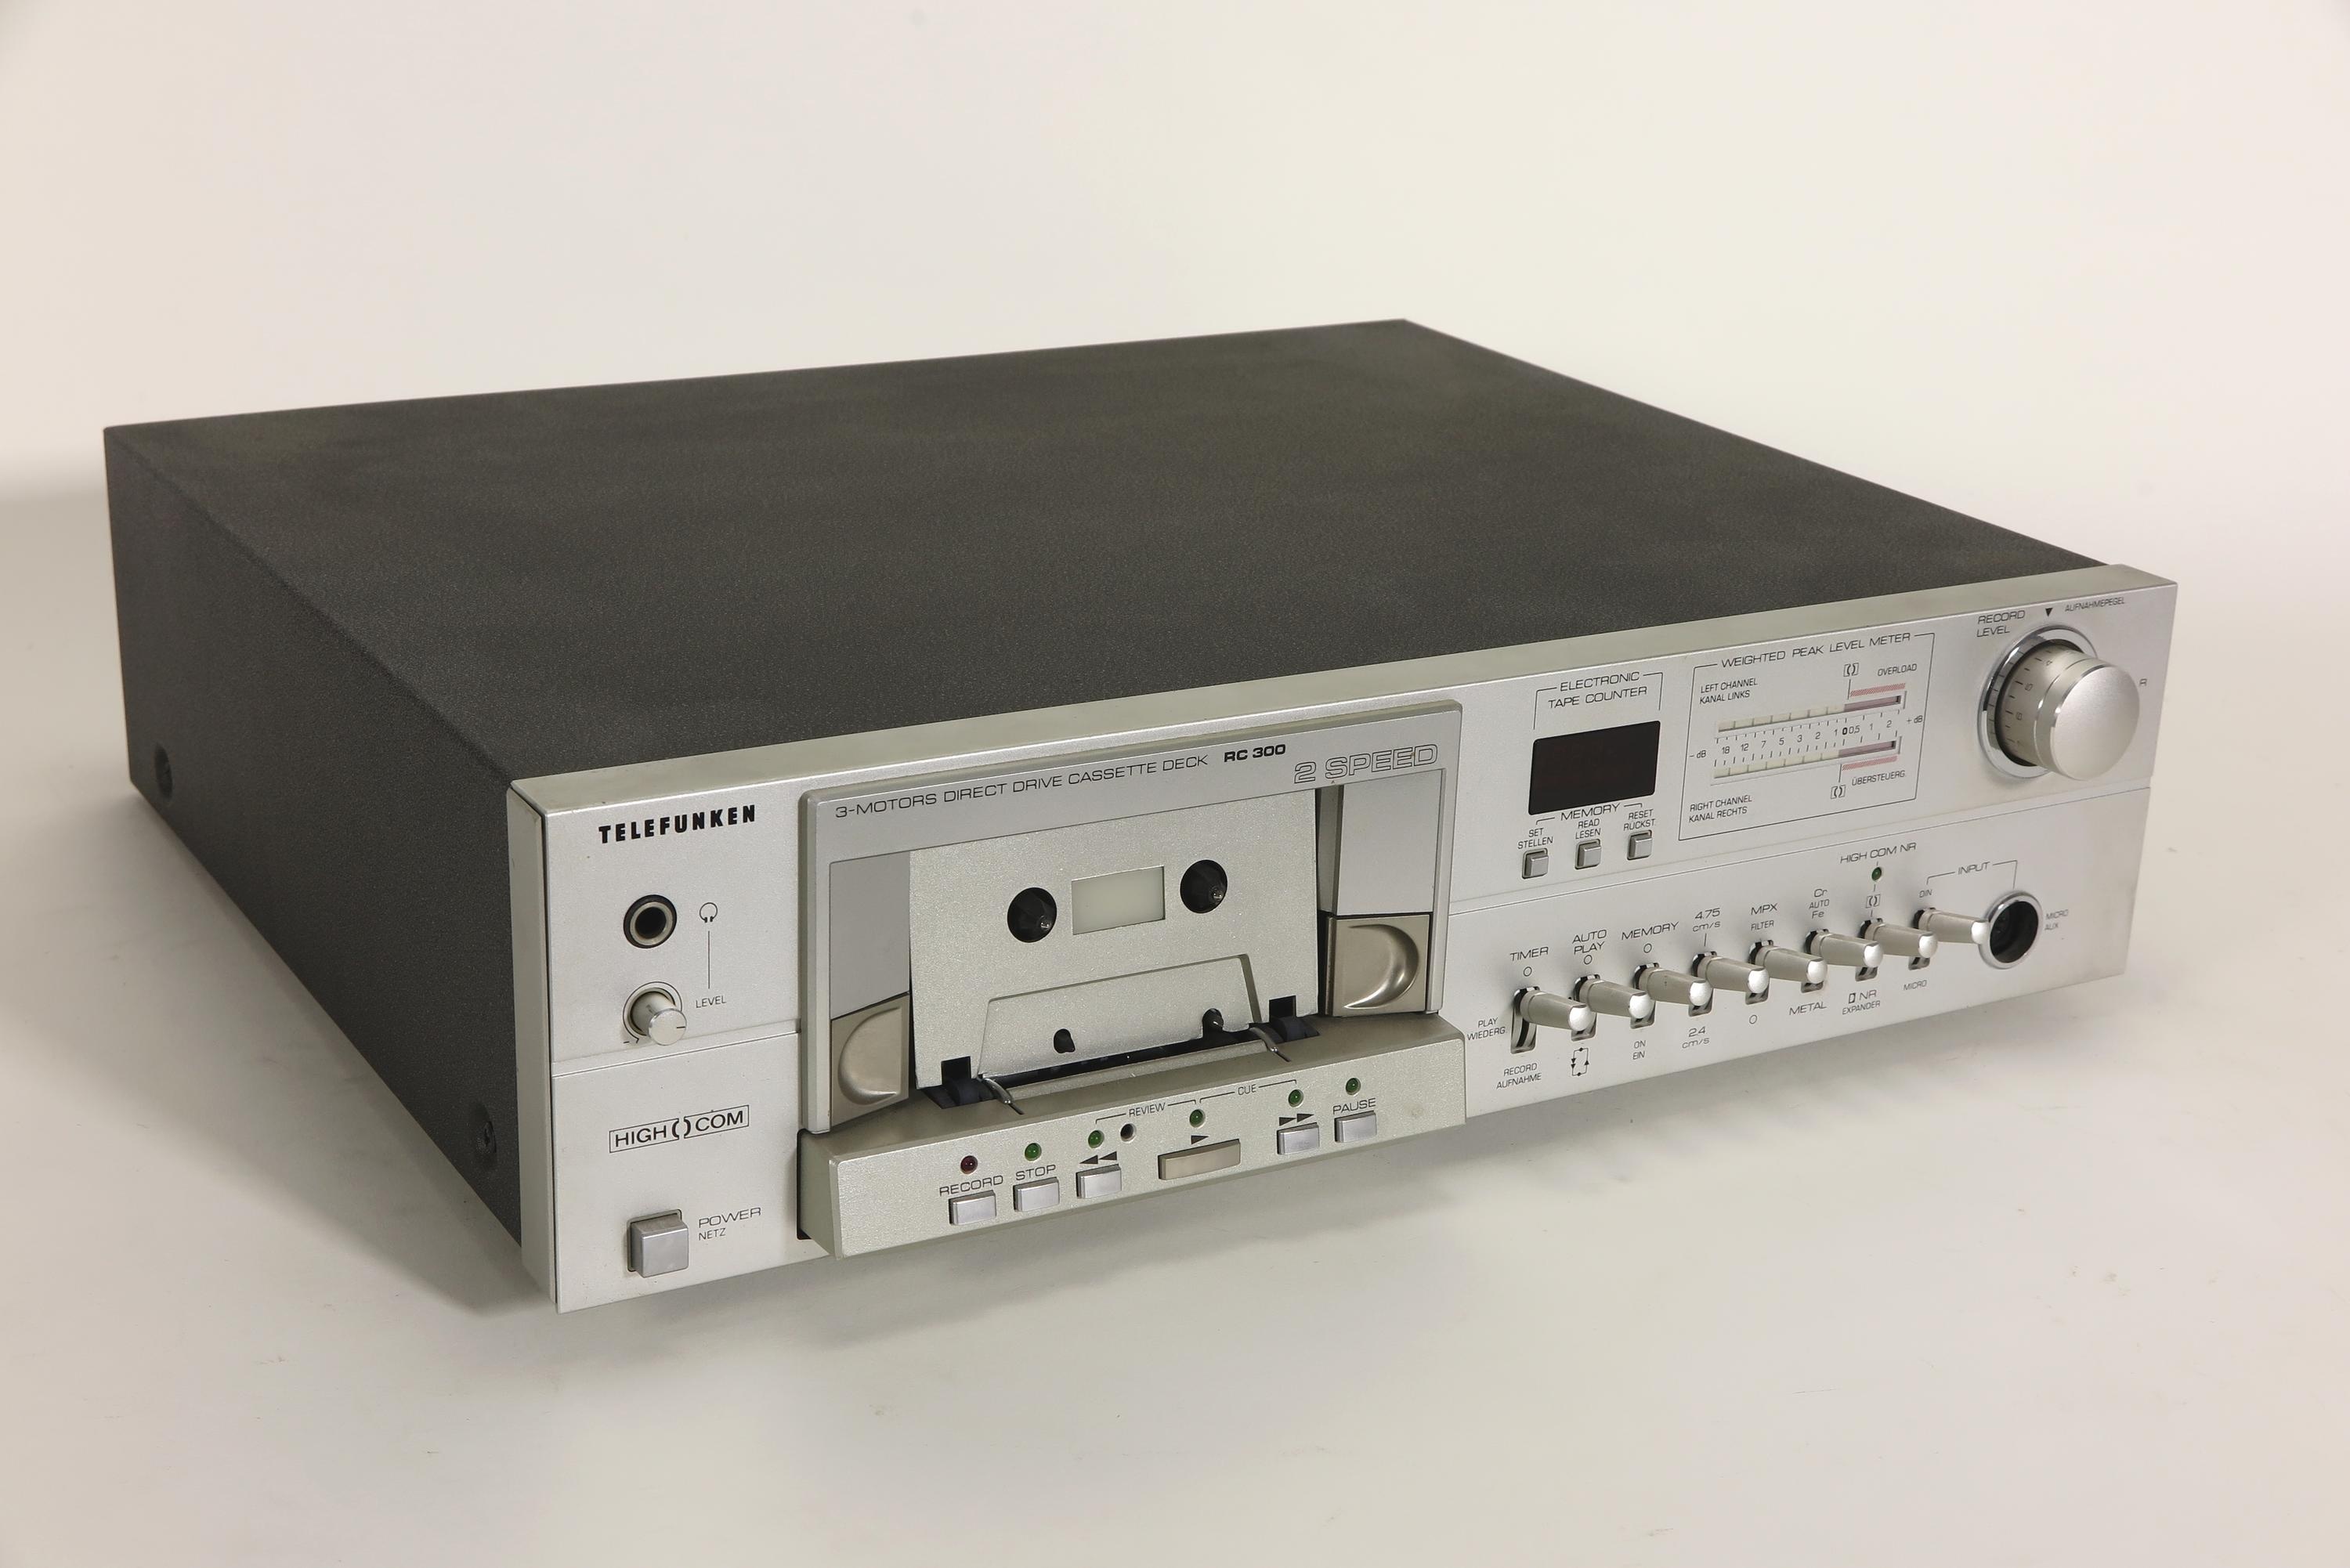 Zubehör zu Kompaktanlage Telefunken 300 (4 Komponenten), Kassettendeck RC 300 (3-Motors Direct Drive Casssette Deck) (Deutsches Technikmuseum CC BY)